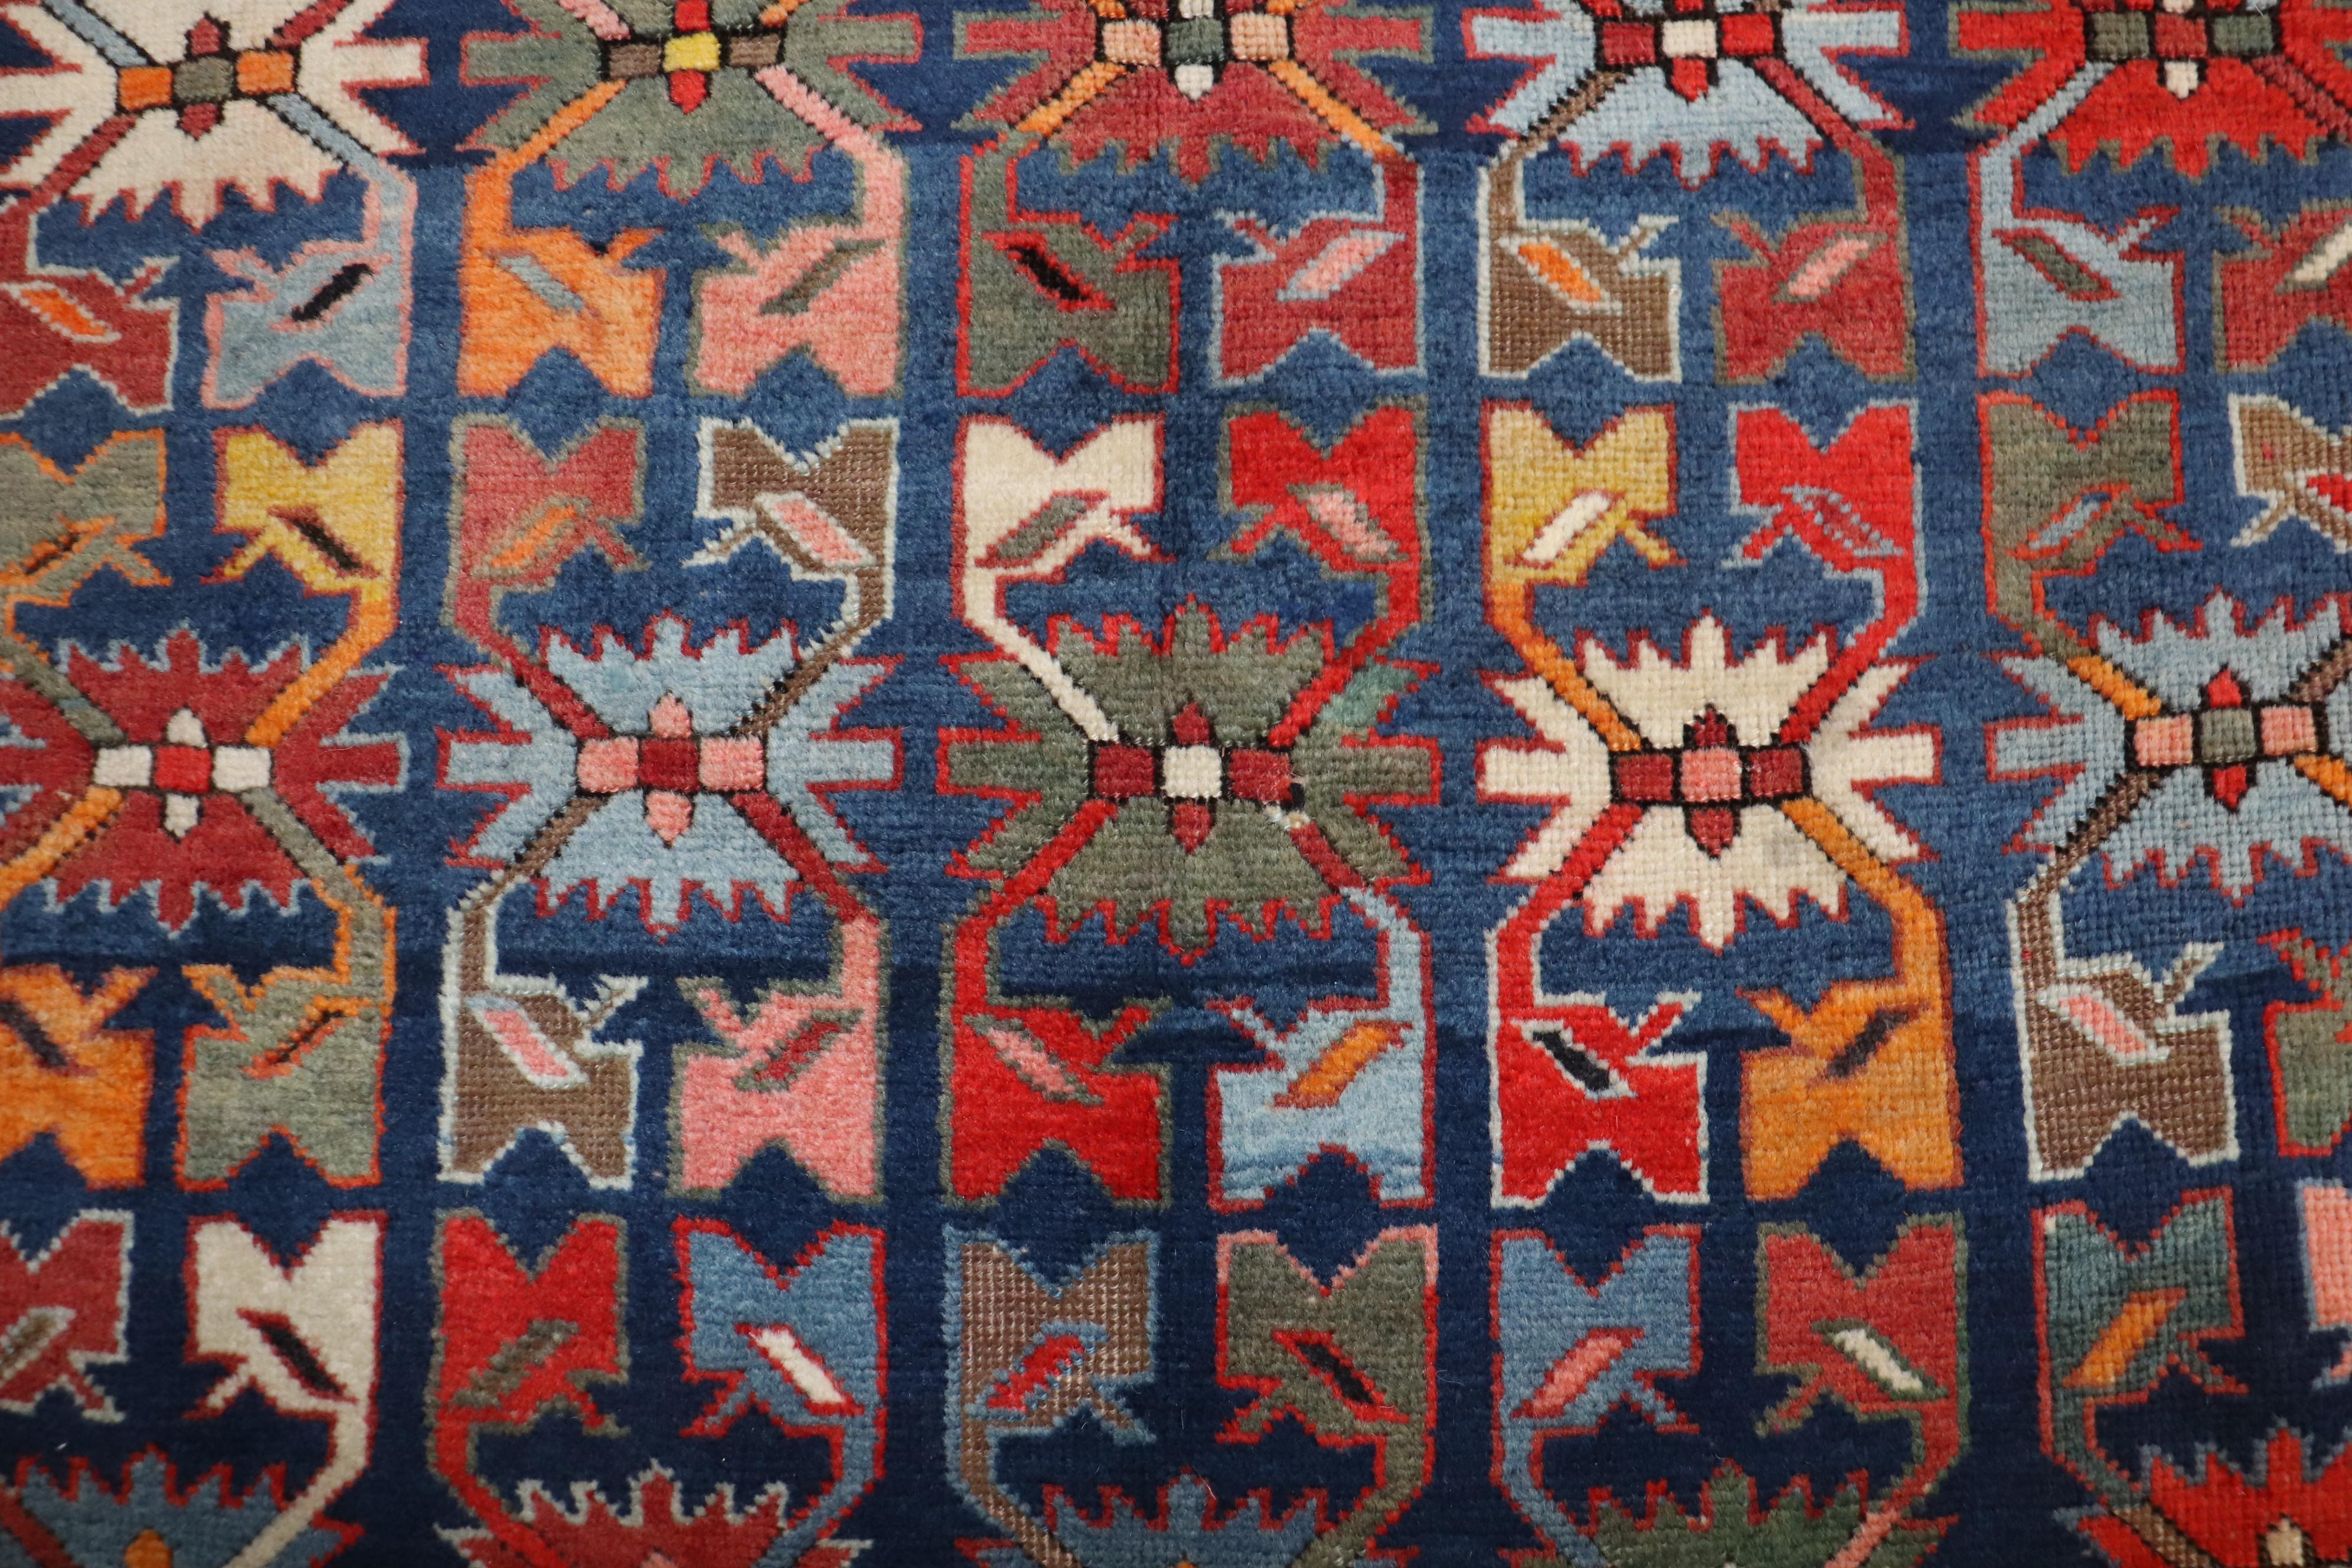 Ein kaukasischer Karabagh-Teppich aus dem frühen 20. Jahrhundert mit einem nicht-traditionellen Motiv in lebhaften Farben. Das Feld ist marineblau, grün und mit tomatenroten Akzenten. 

Maße: 3'11